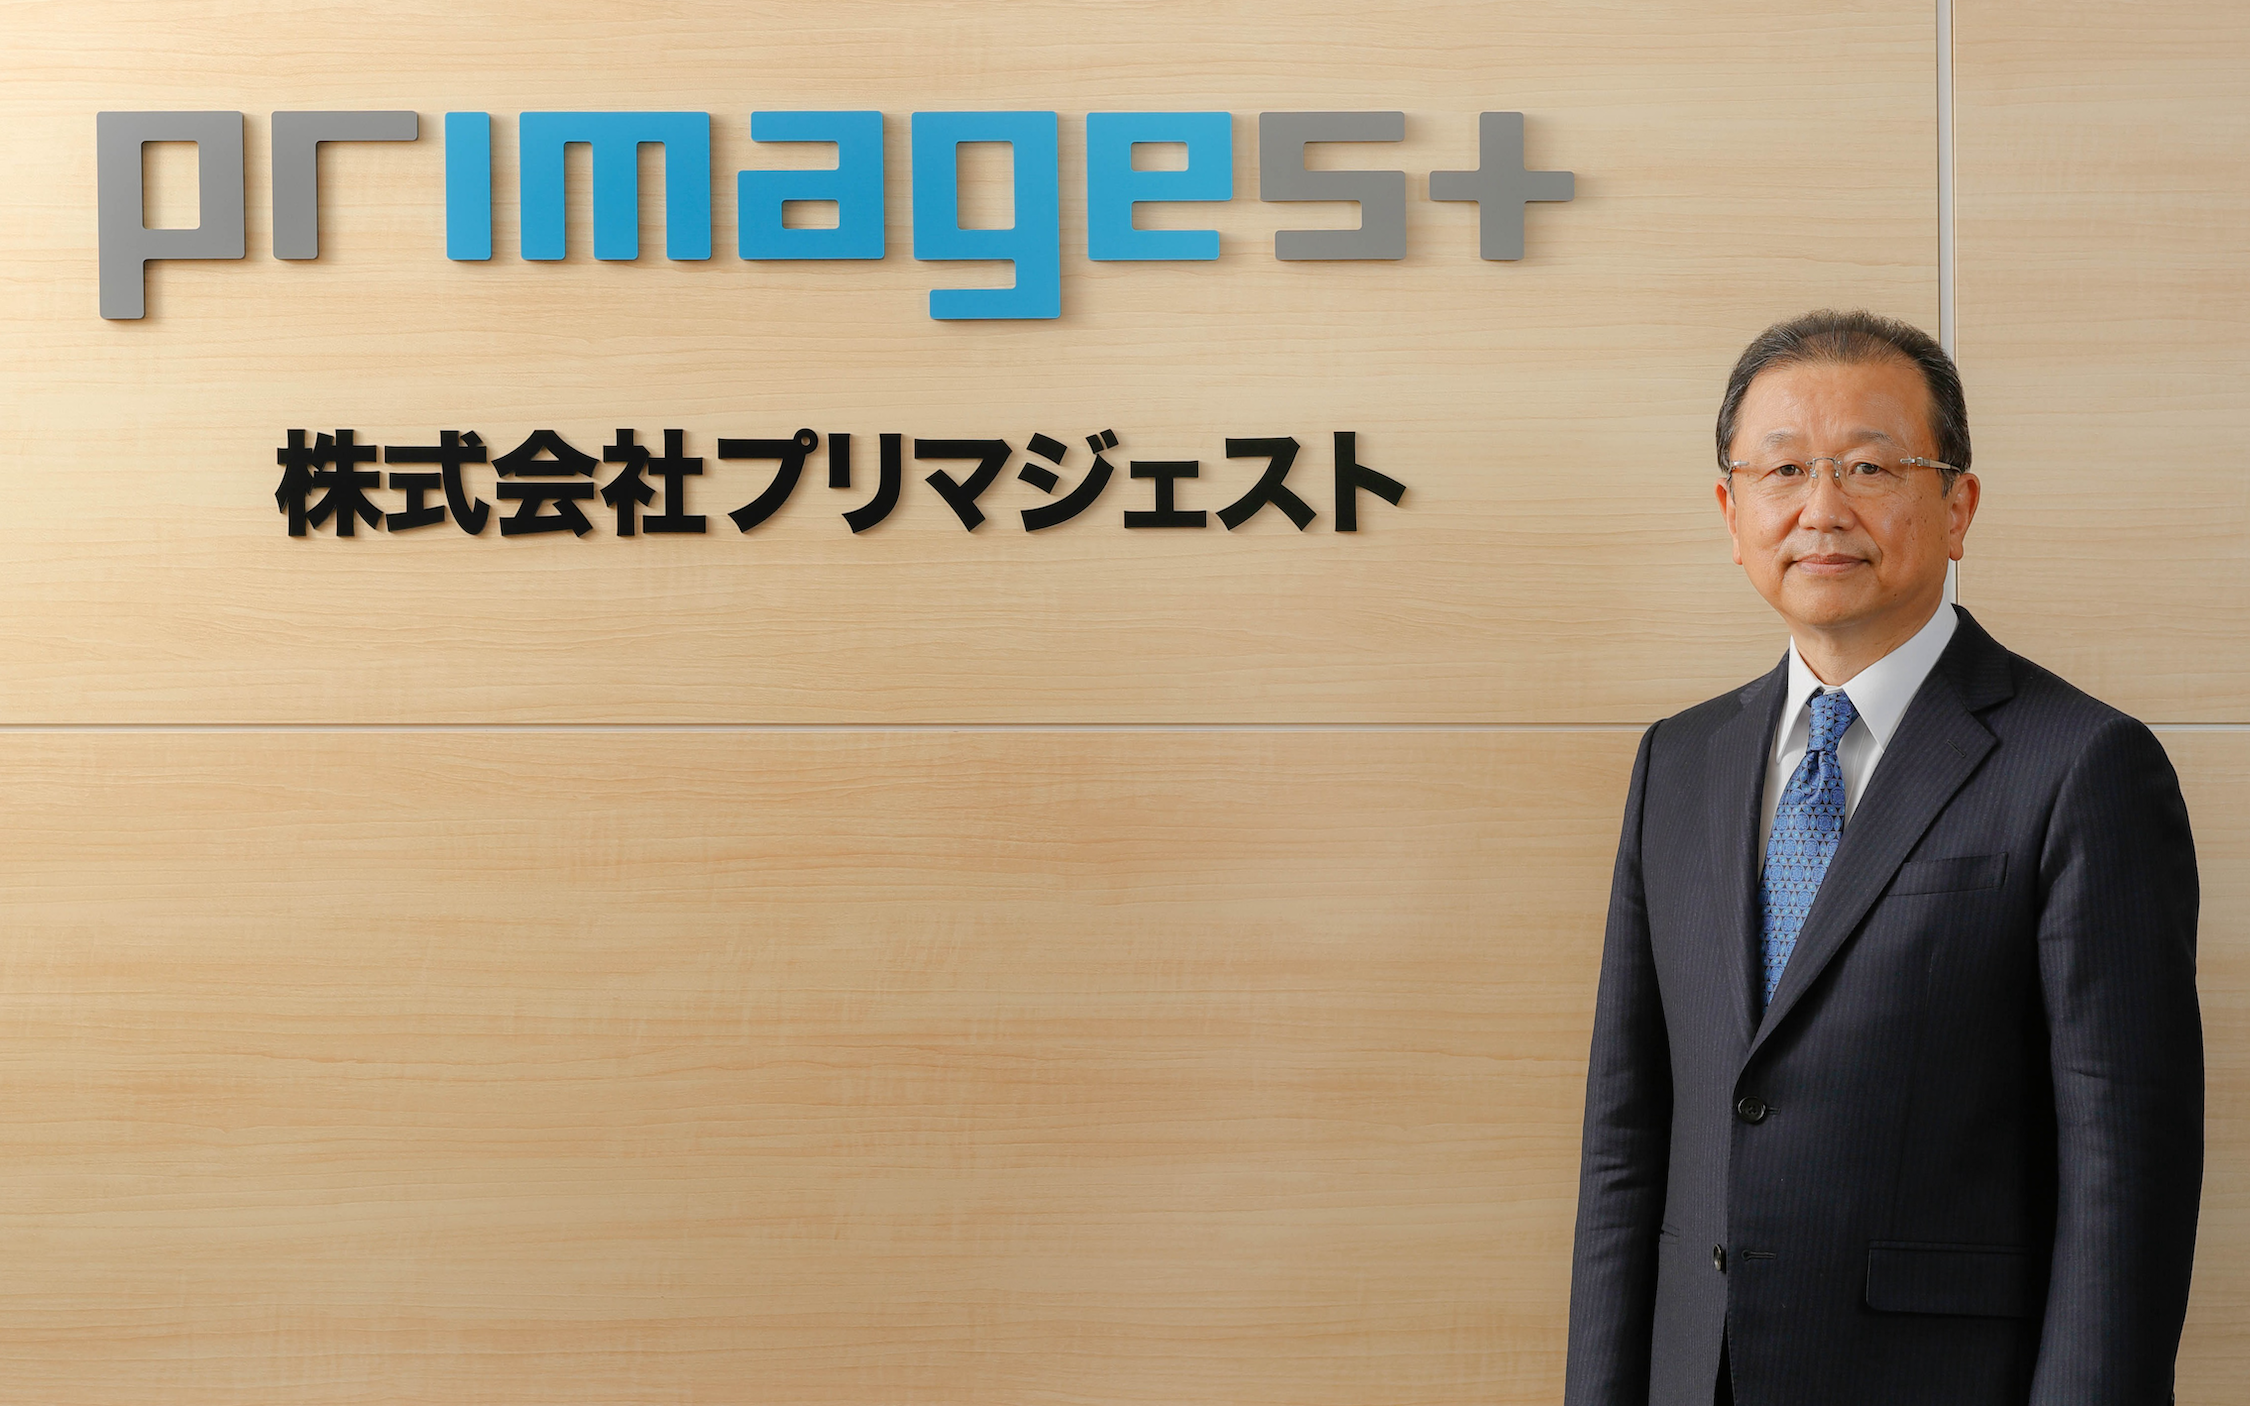 President Hideaki Inagaki